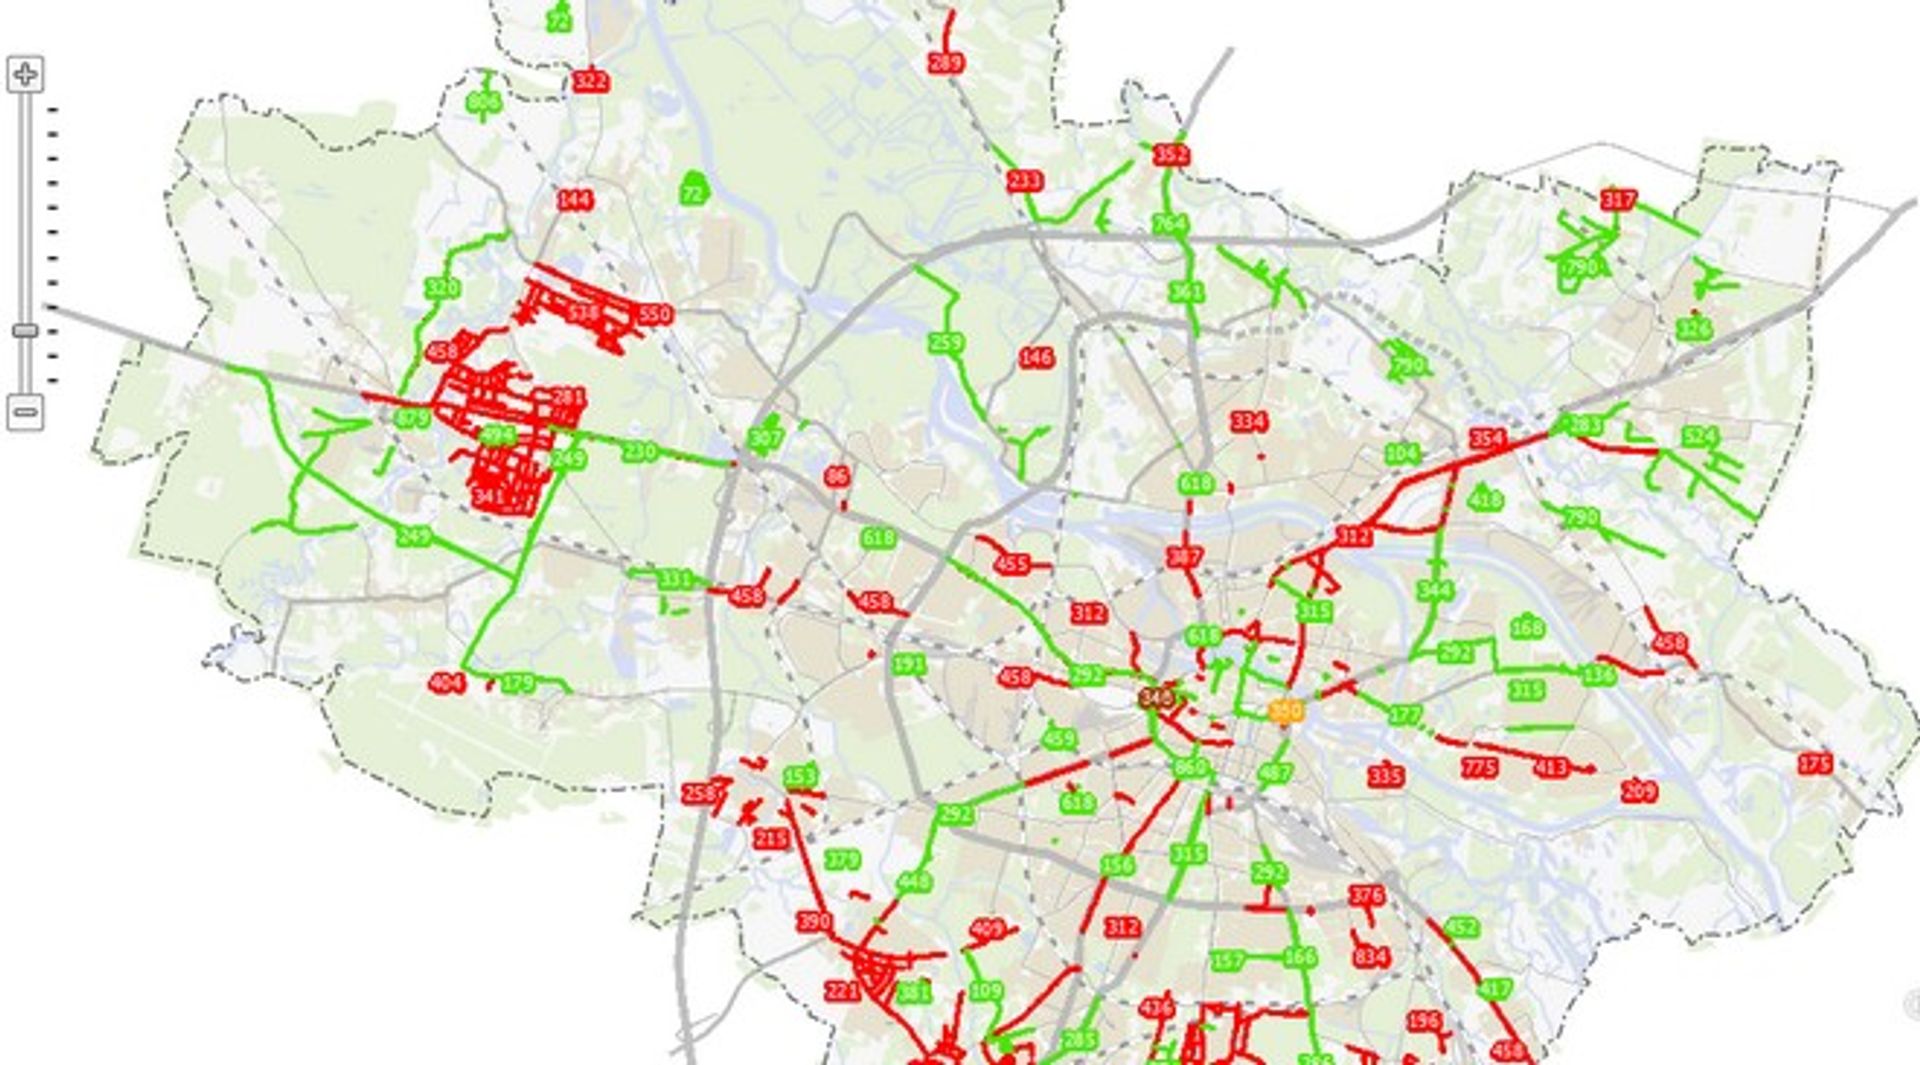  Urzędnicy uruchomili interaktywną mapę wrocławskich inwestycji